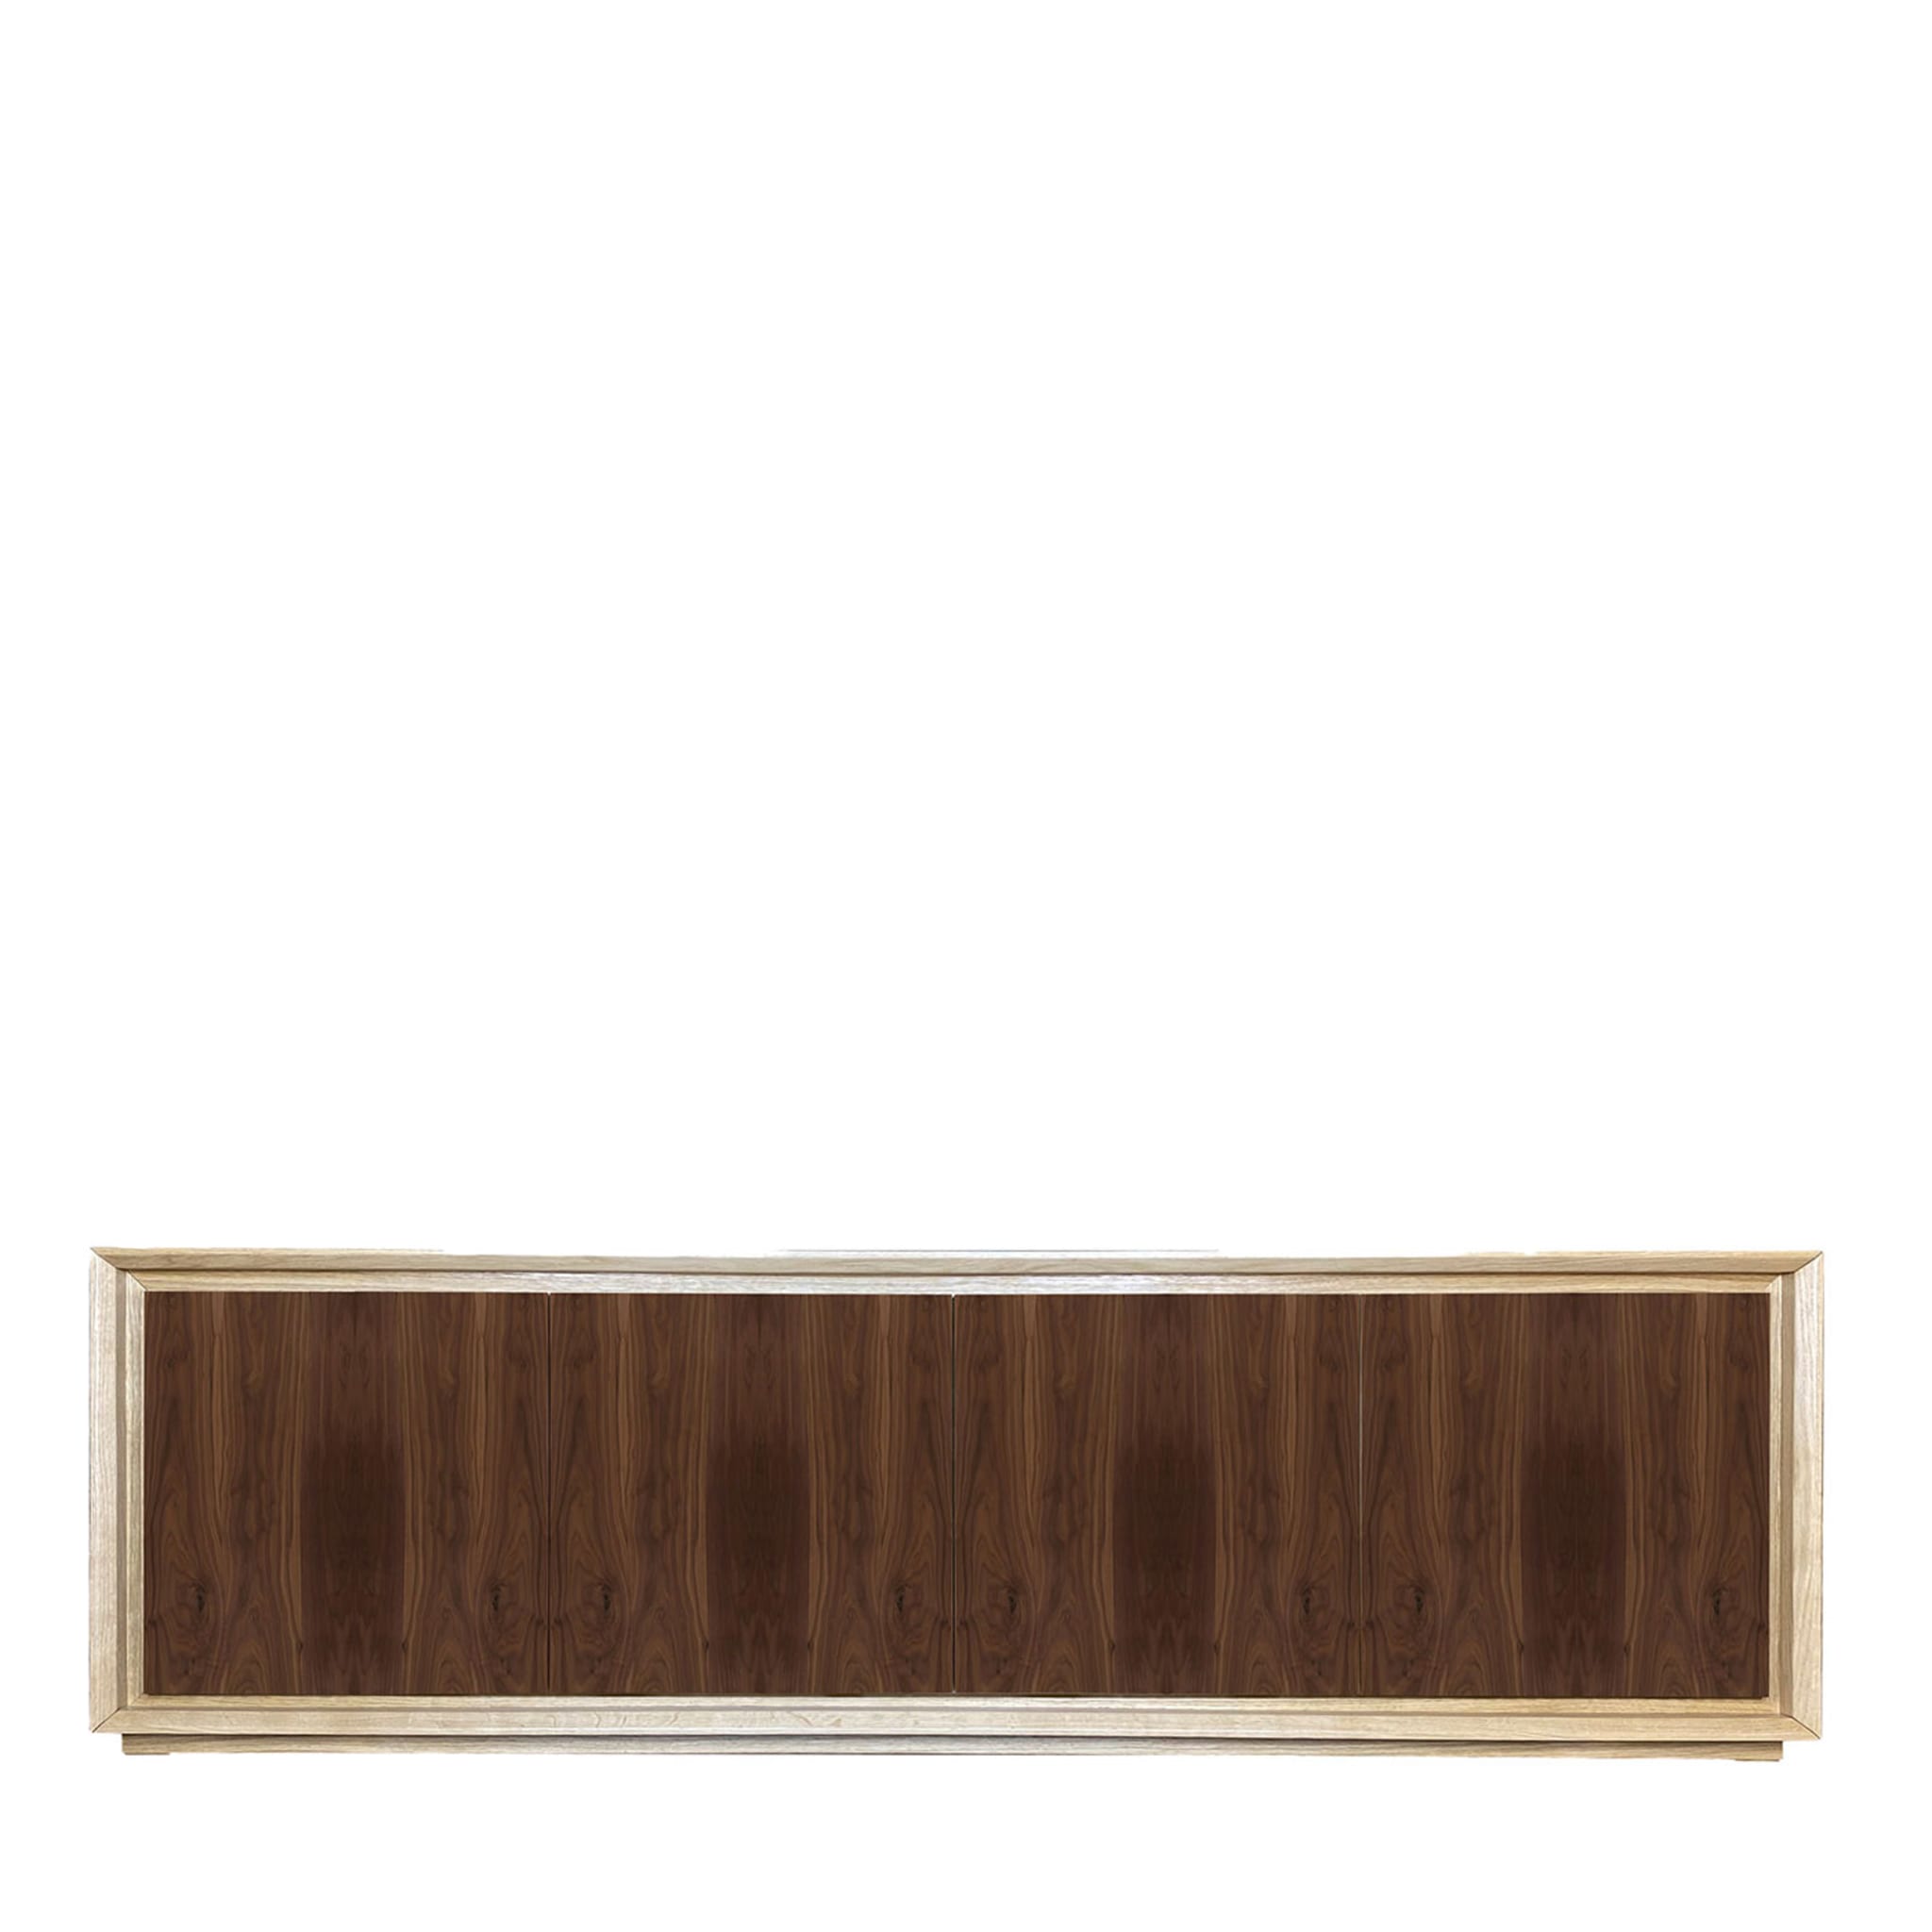 Canaletto 4-türiges Sideboard aus Nussbaum und Durmast von Mascia Meccani - Hauptansicht